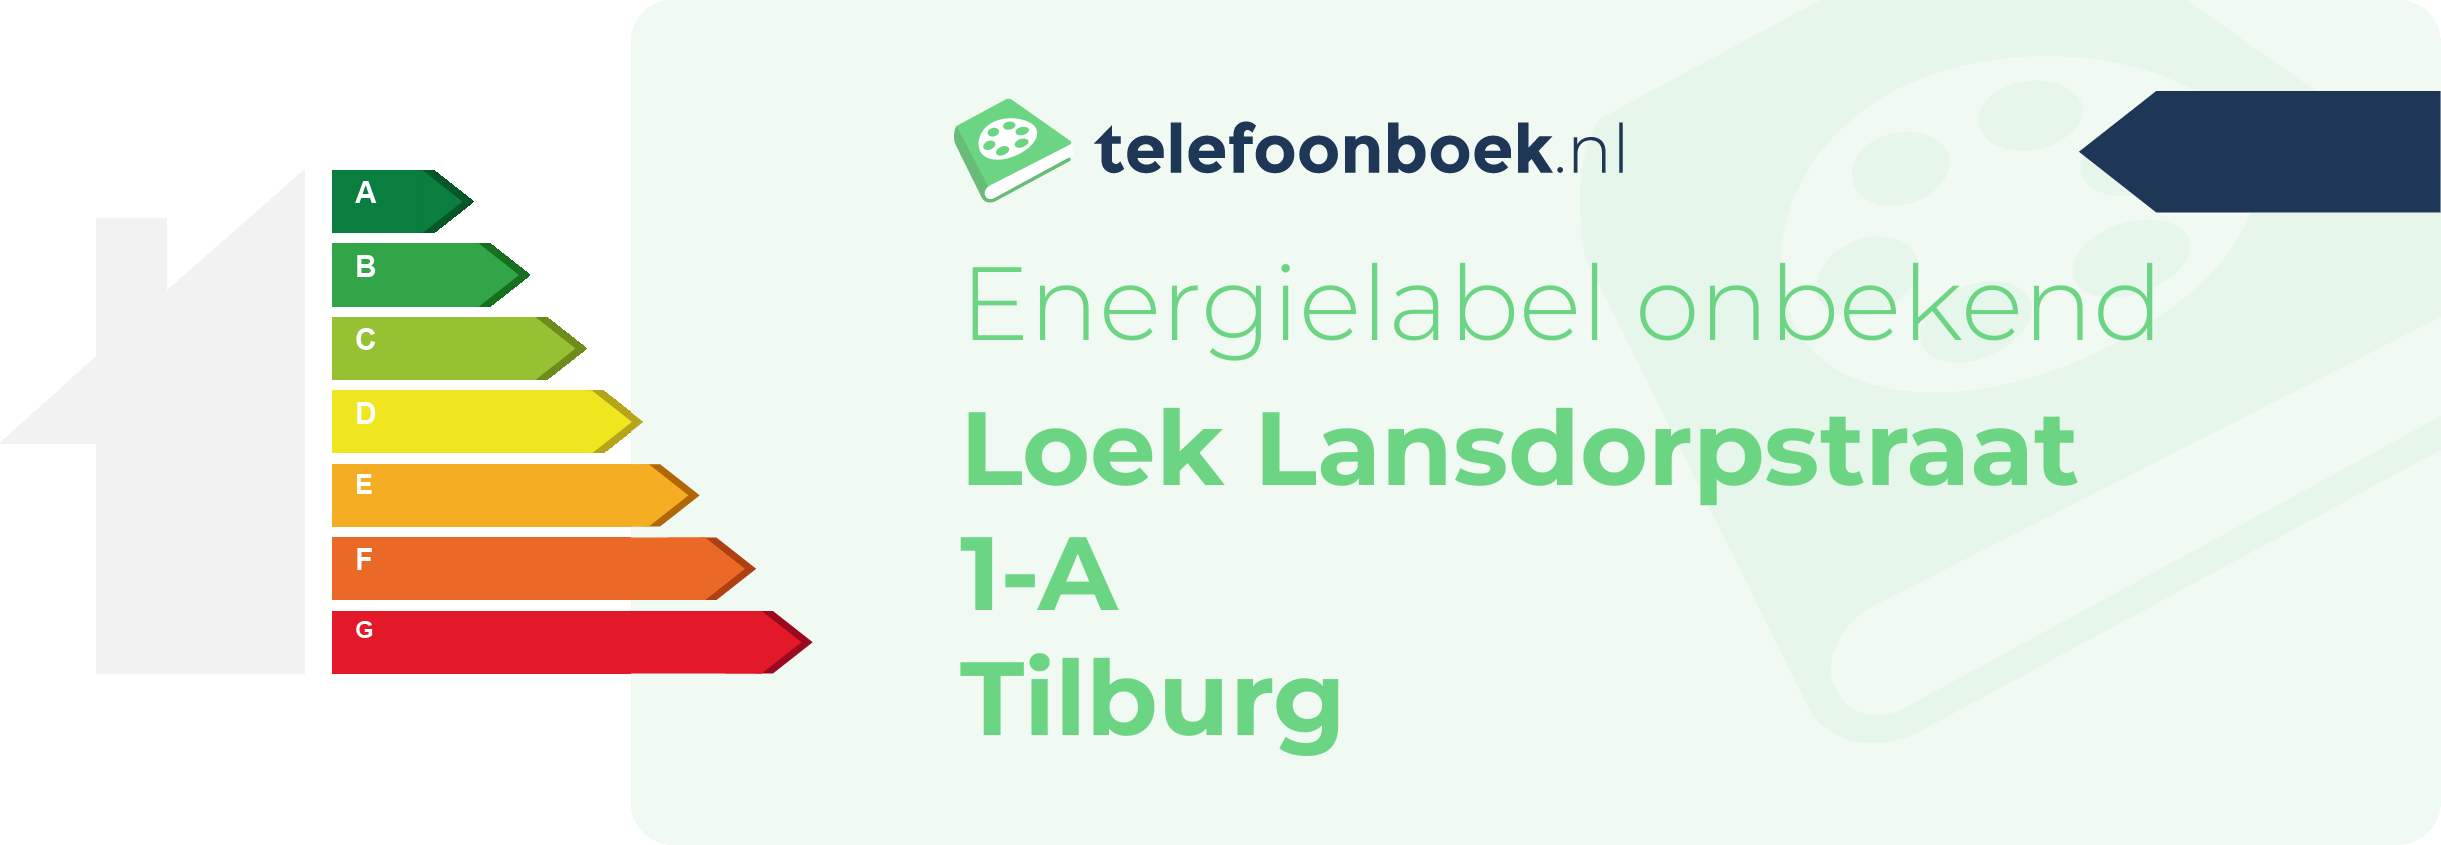 Energielabel Loek Lansdorpstraat 1-A Tilburg